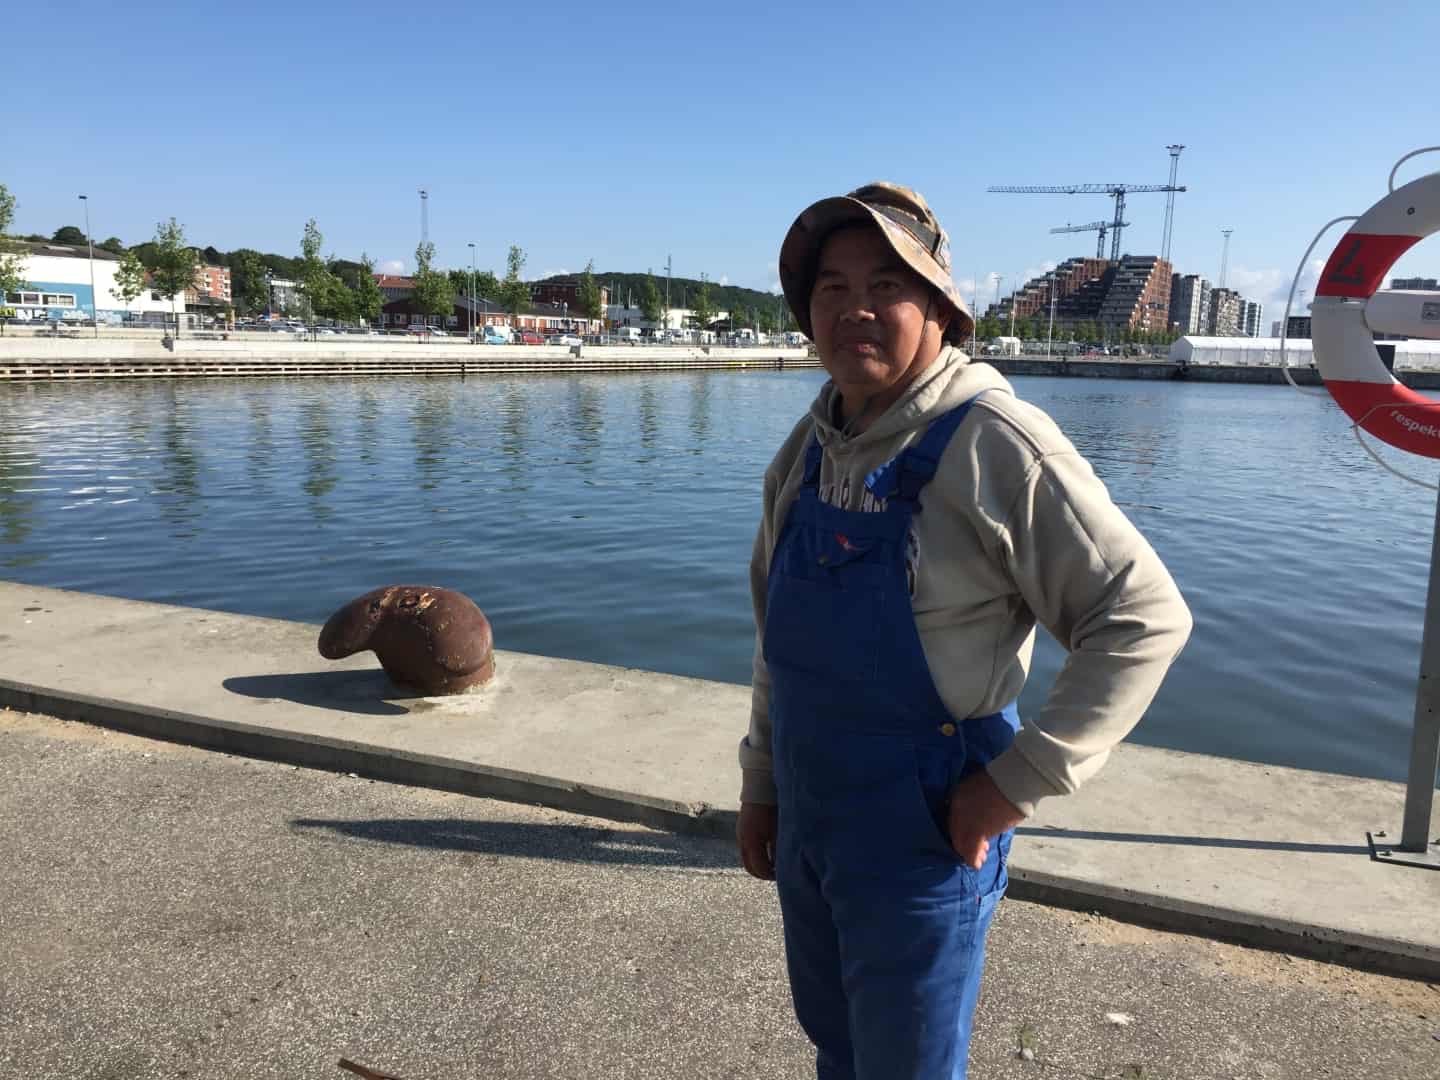 Lystfisker fanger hver dag fjæsing på Aarhus Havn: - Den er meget, meget